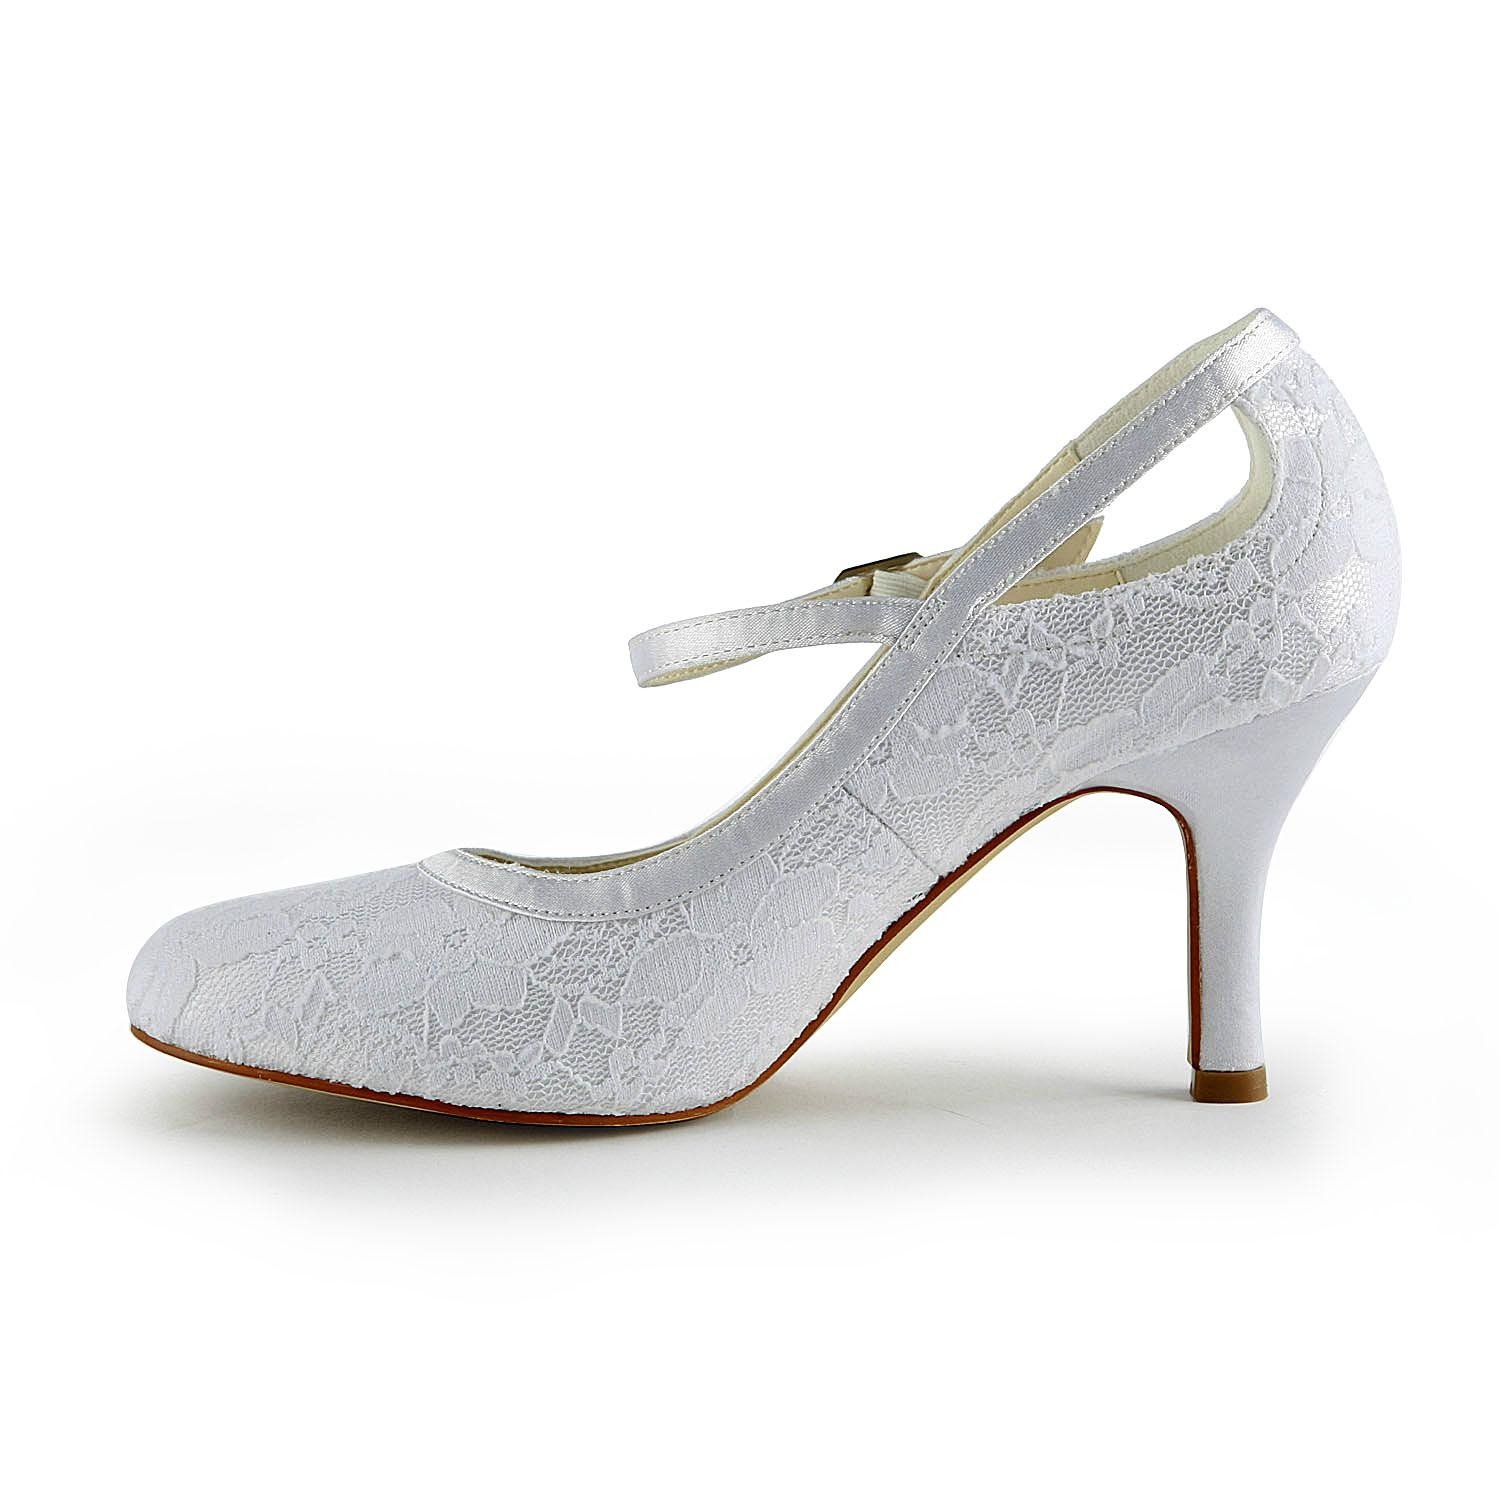 Lace pump low heel bridal shoe 2